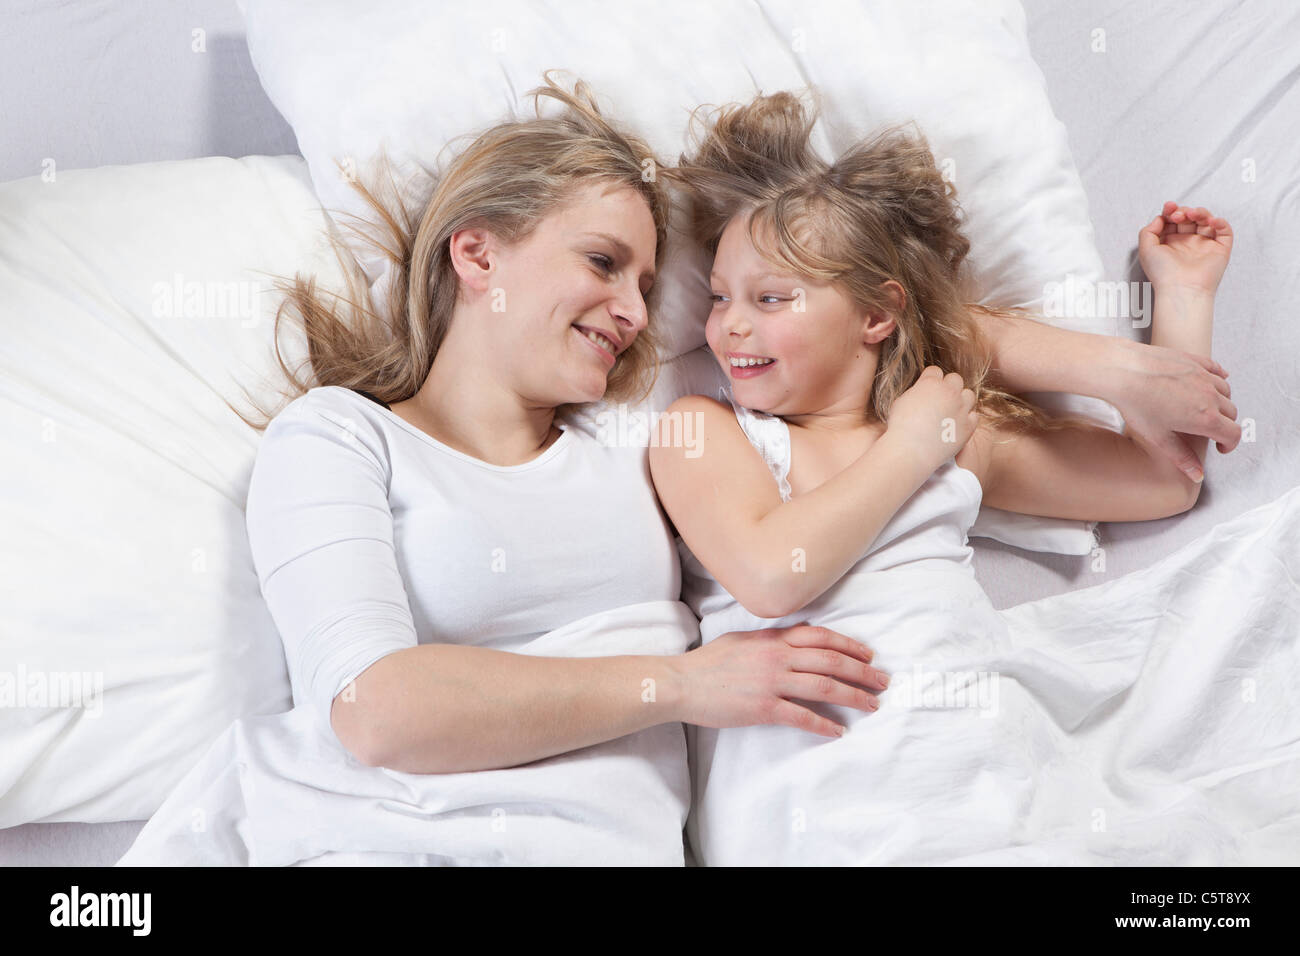 In Germania, in Baviera, Monaco di Baviera, madre e figlia giacente sul letto Foto Stock